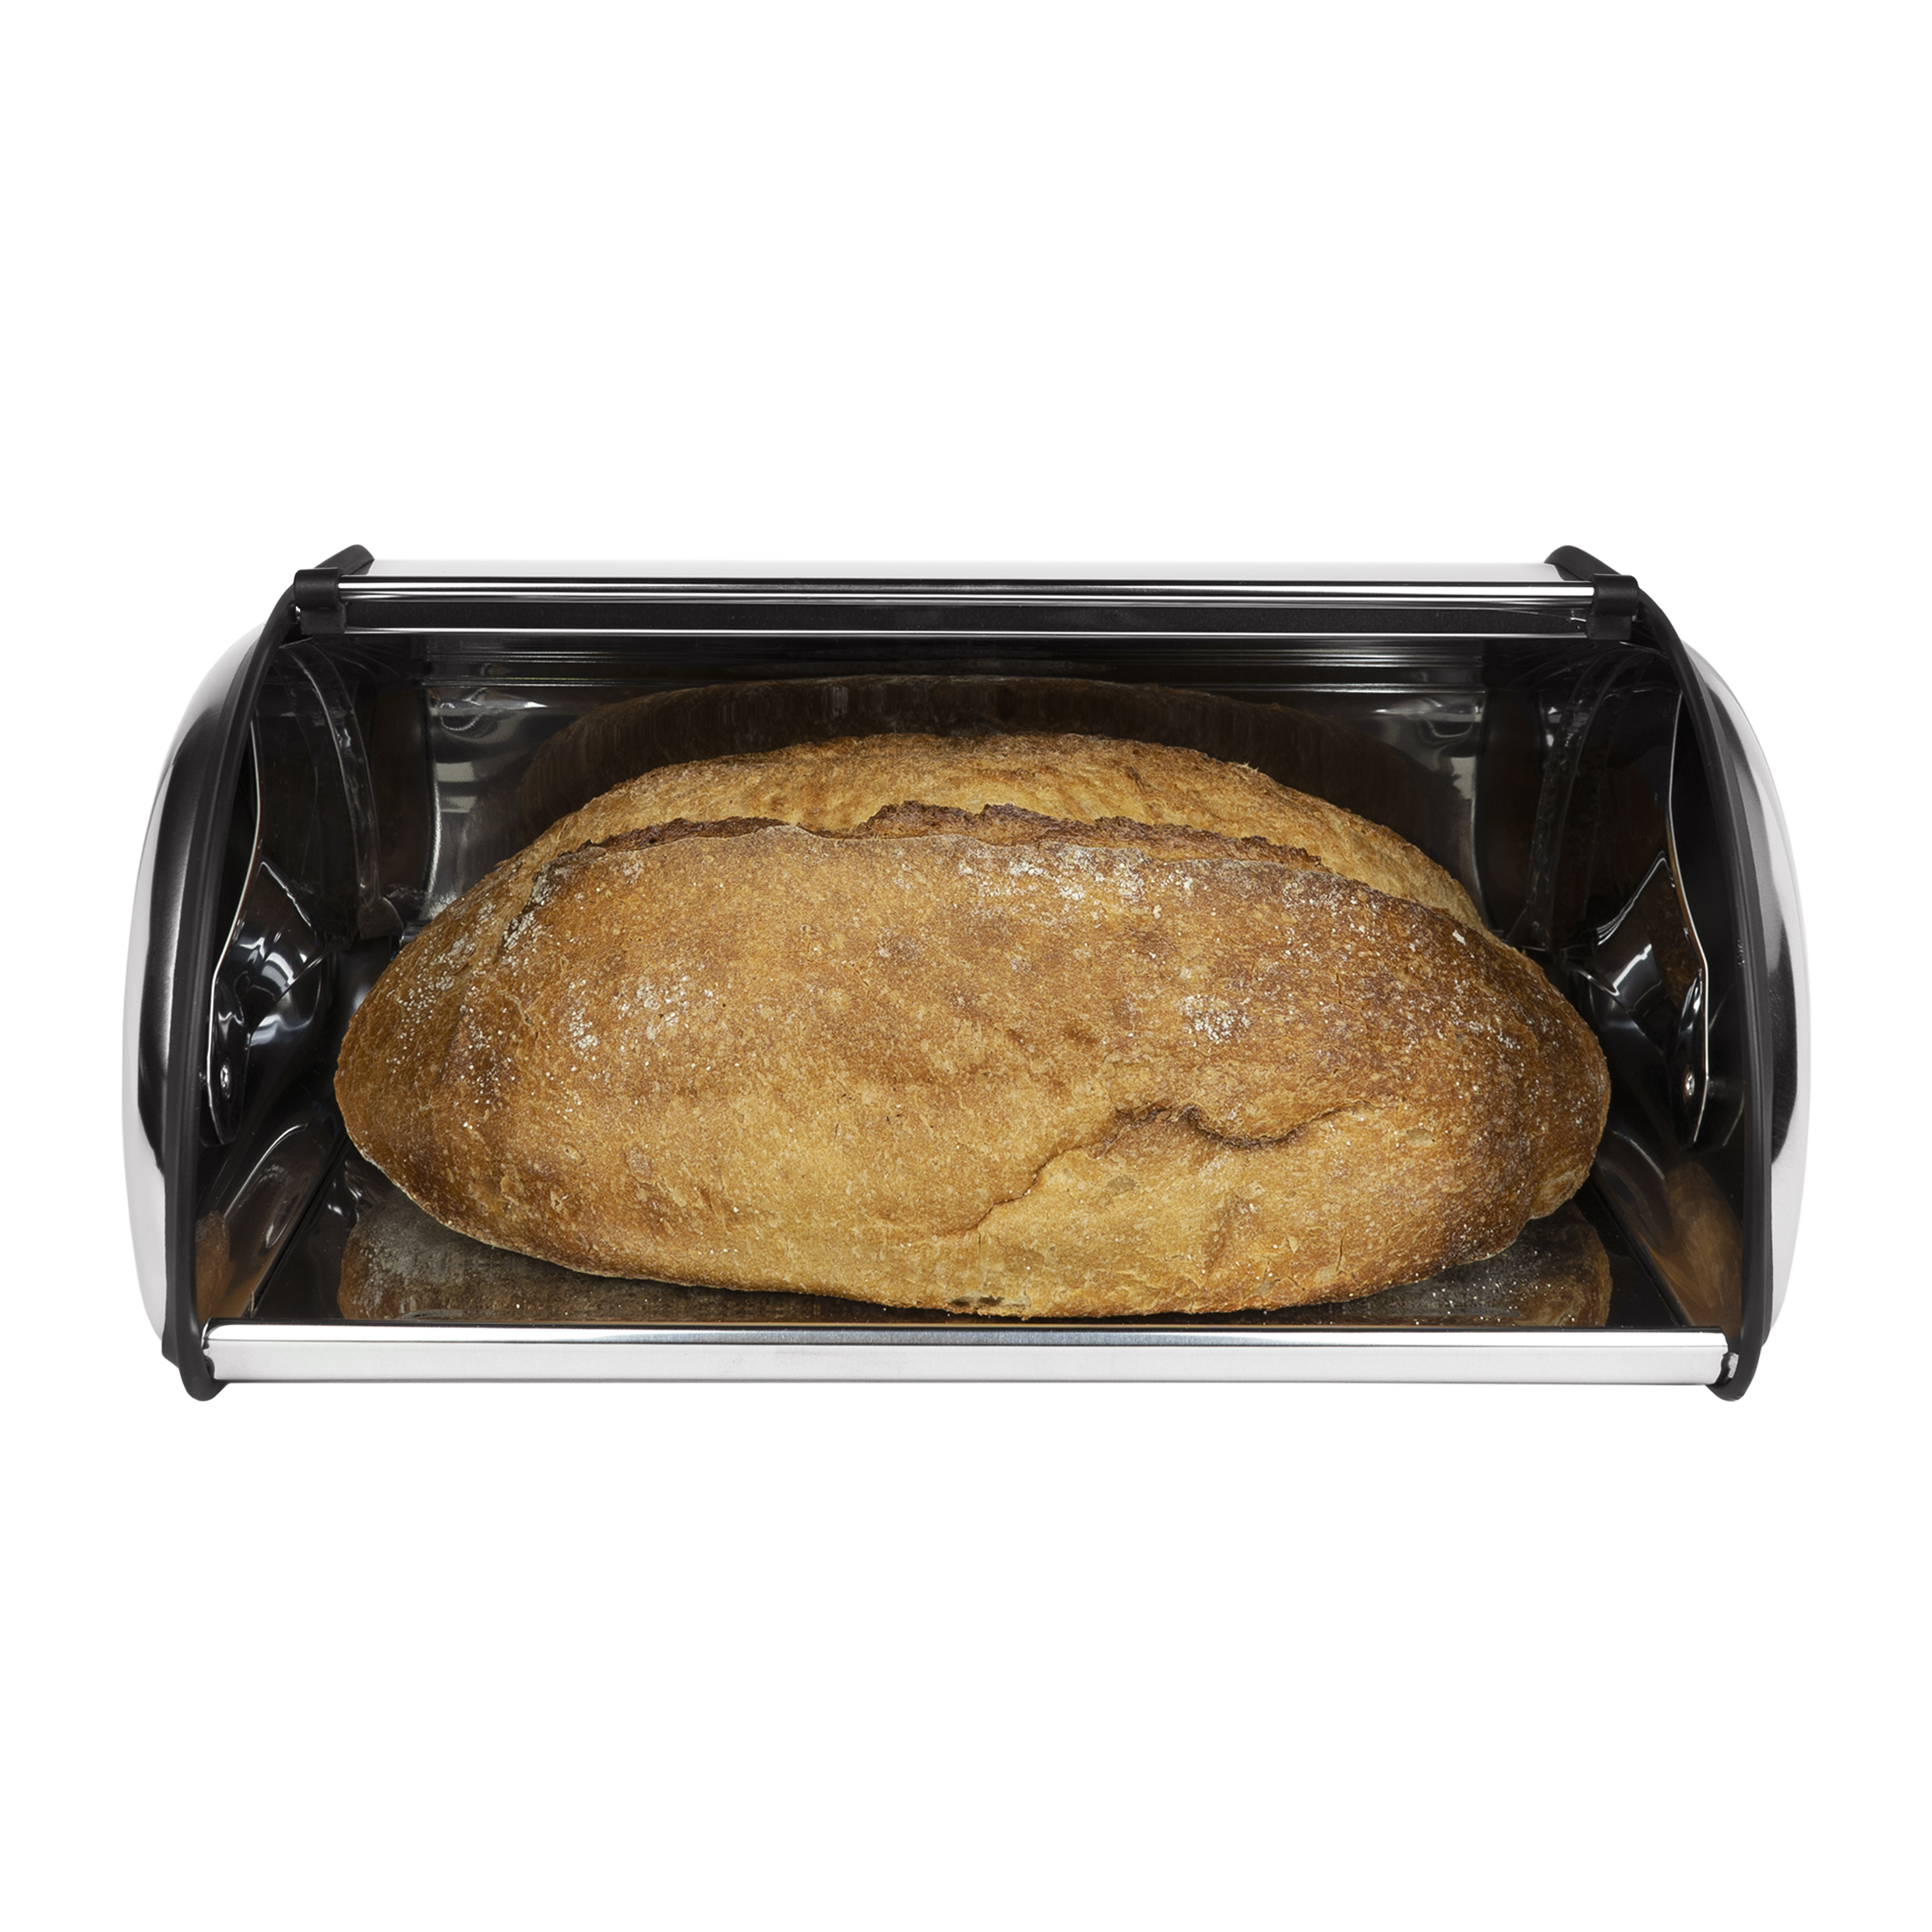 Hoe blijft je brood langer vers?